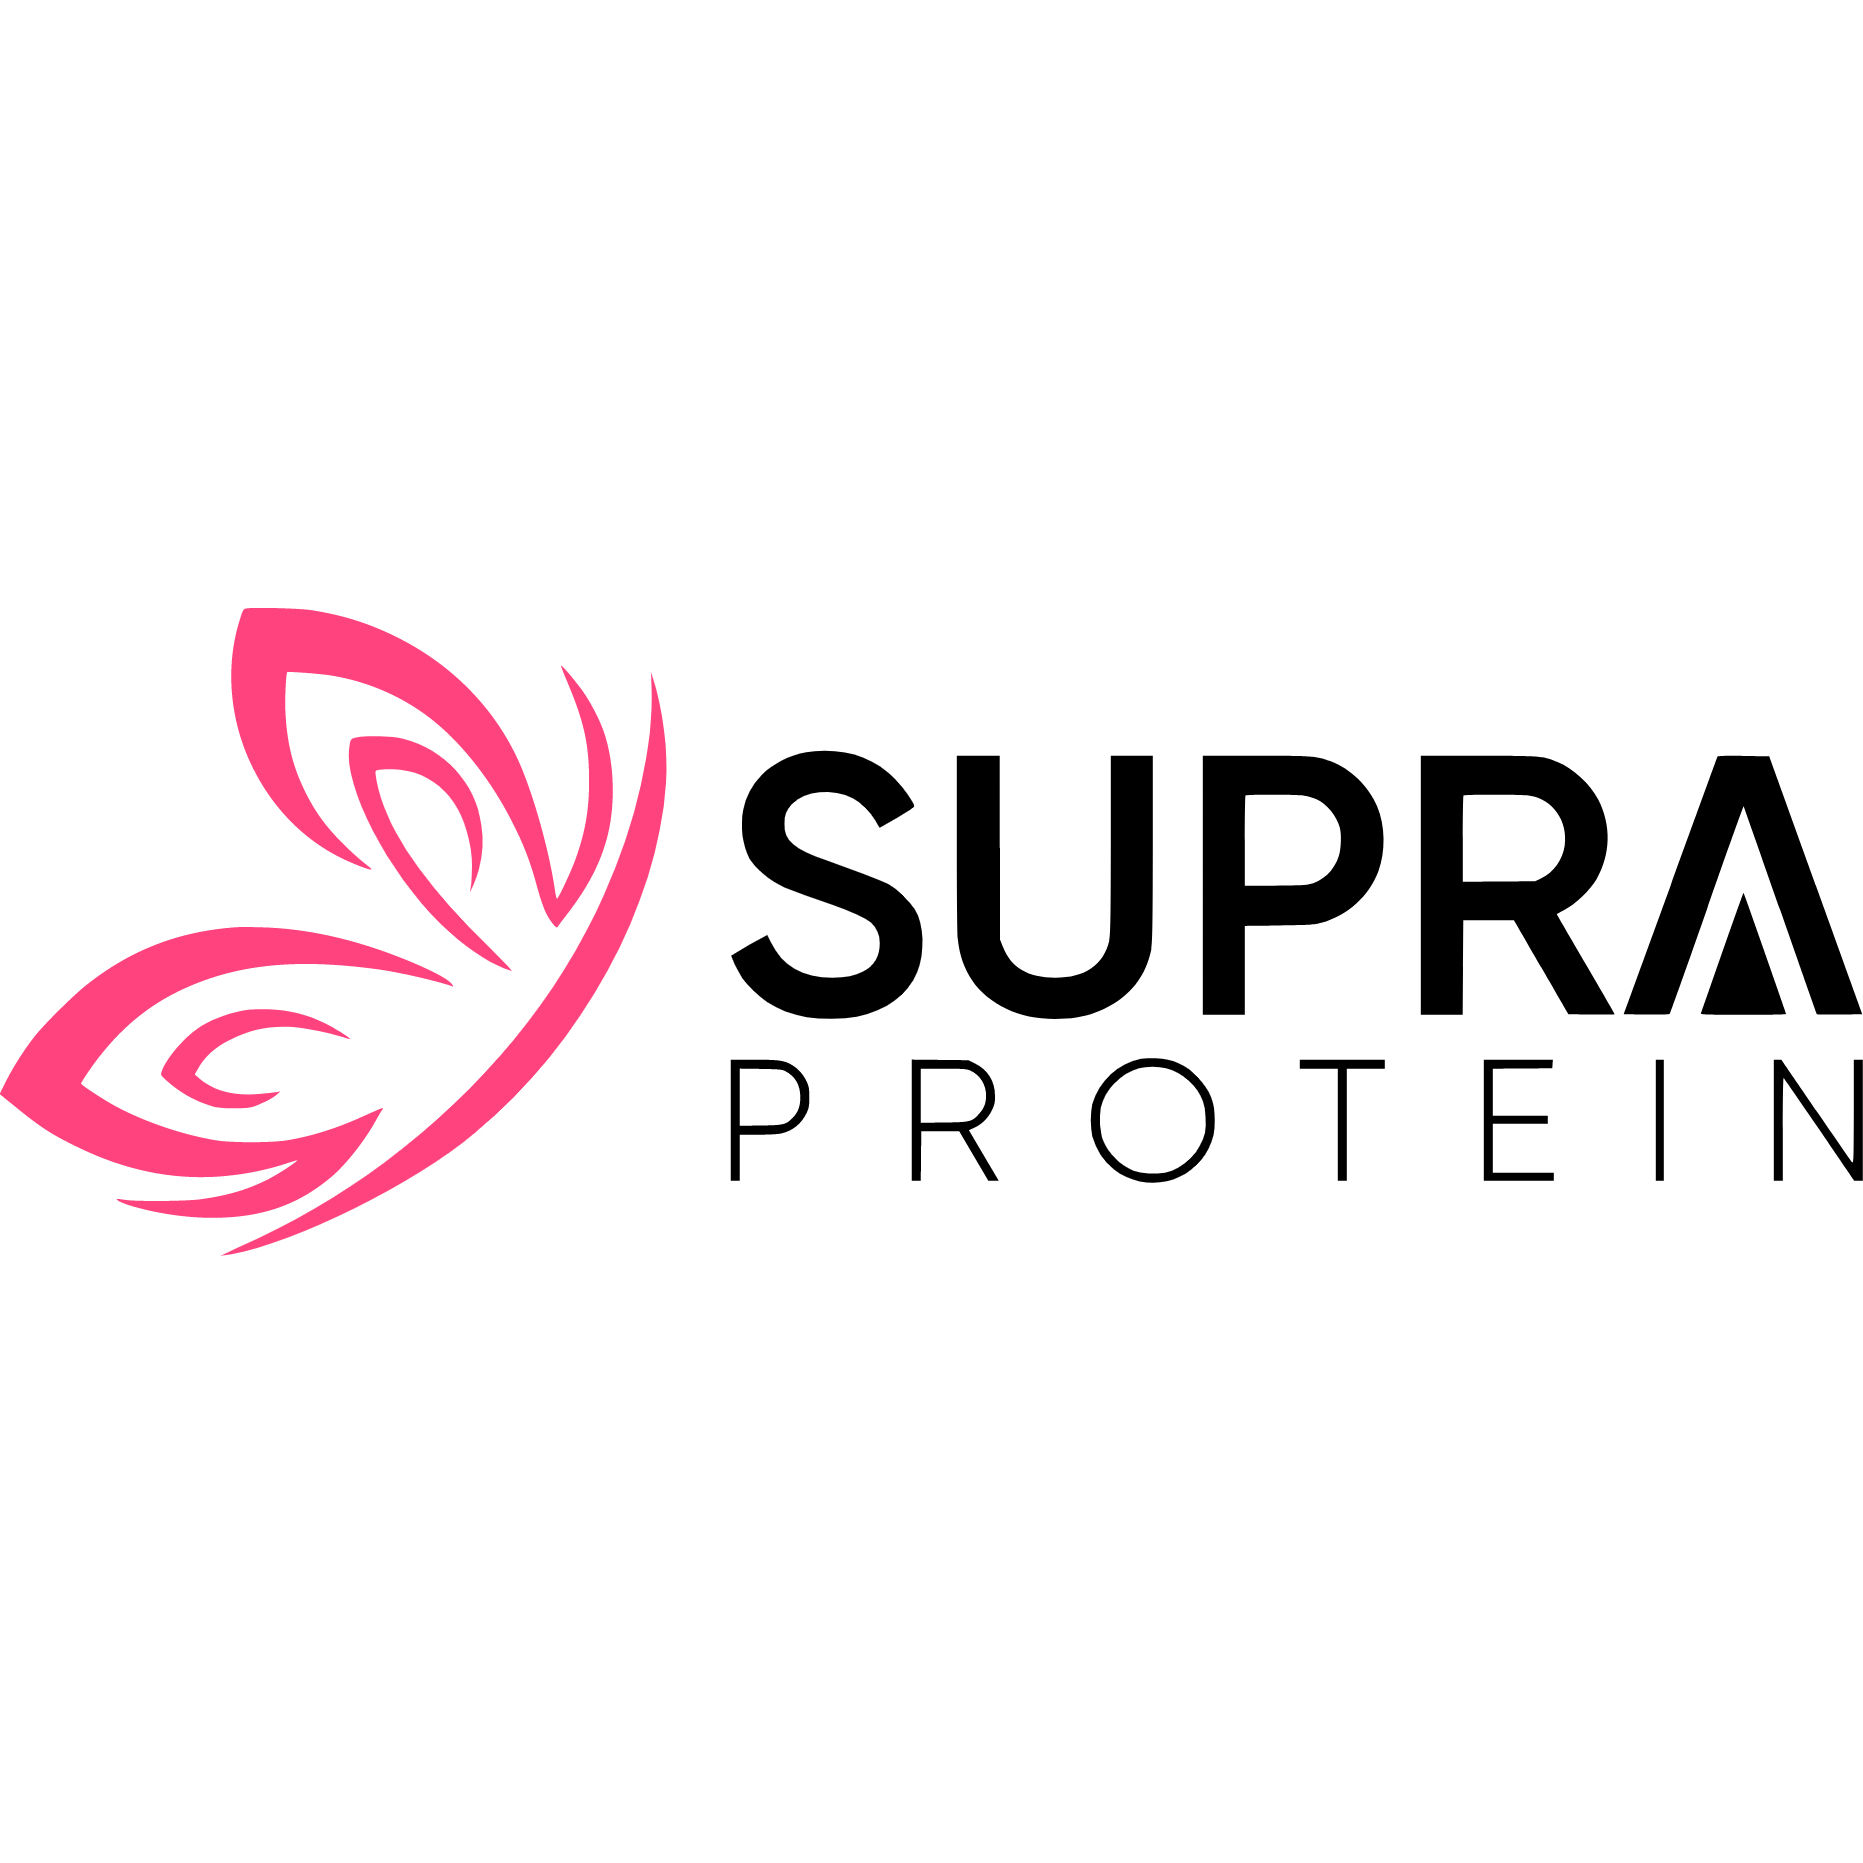 Supra Protein